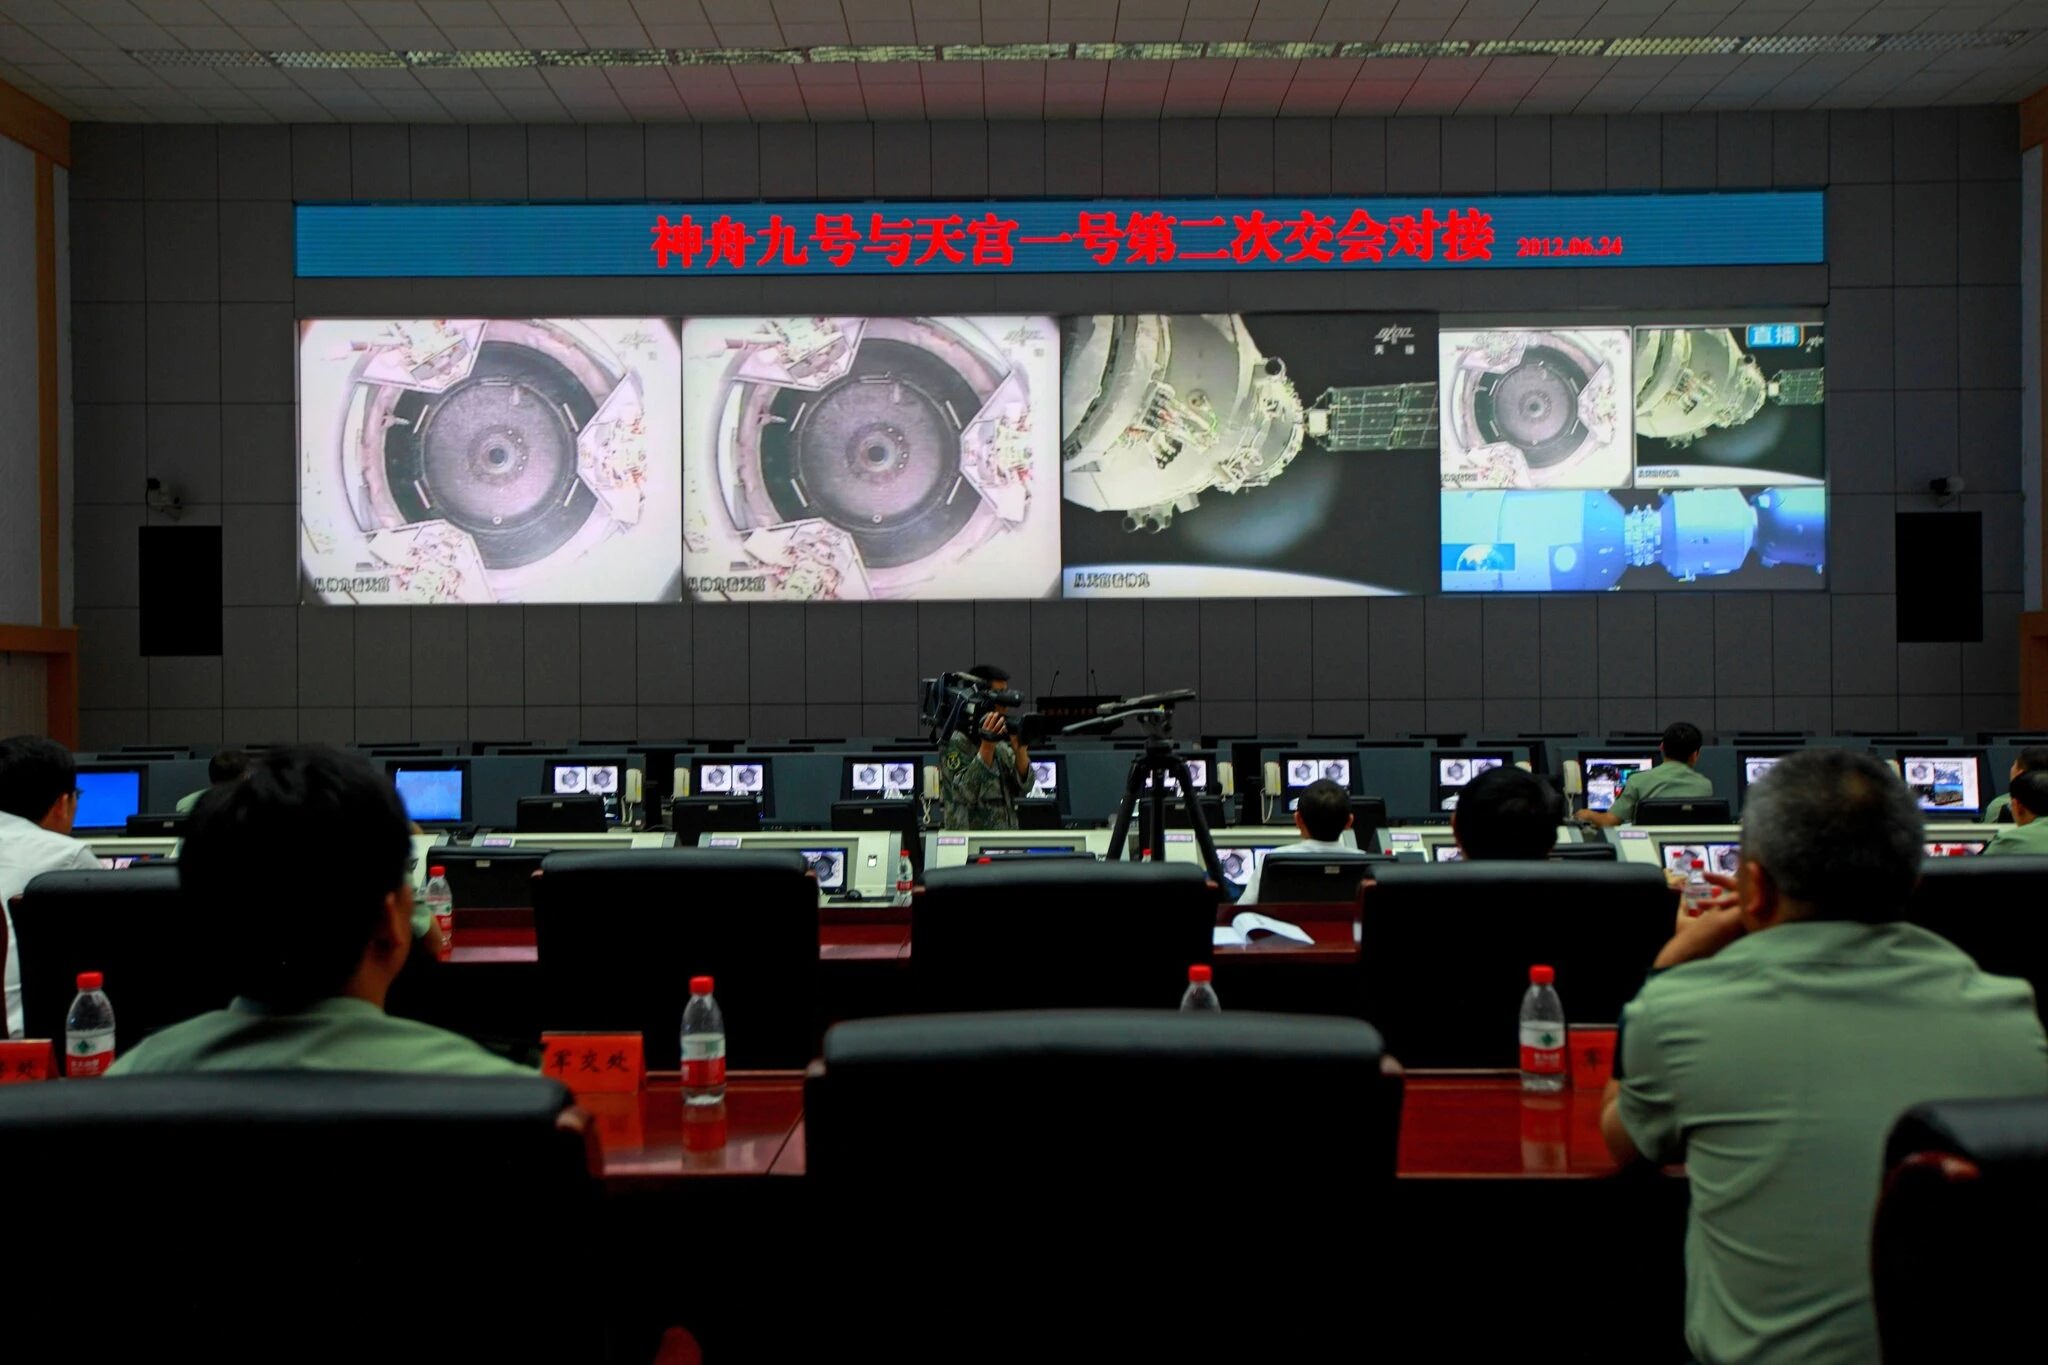 تکنسین های چینی درحال نظارت بر یک پرواز فضایی 